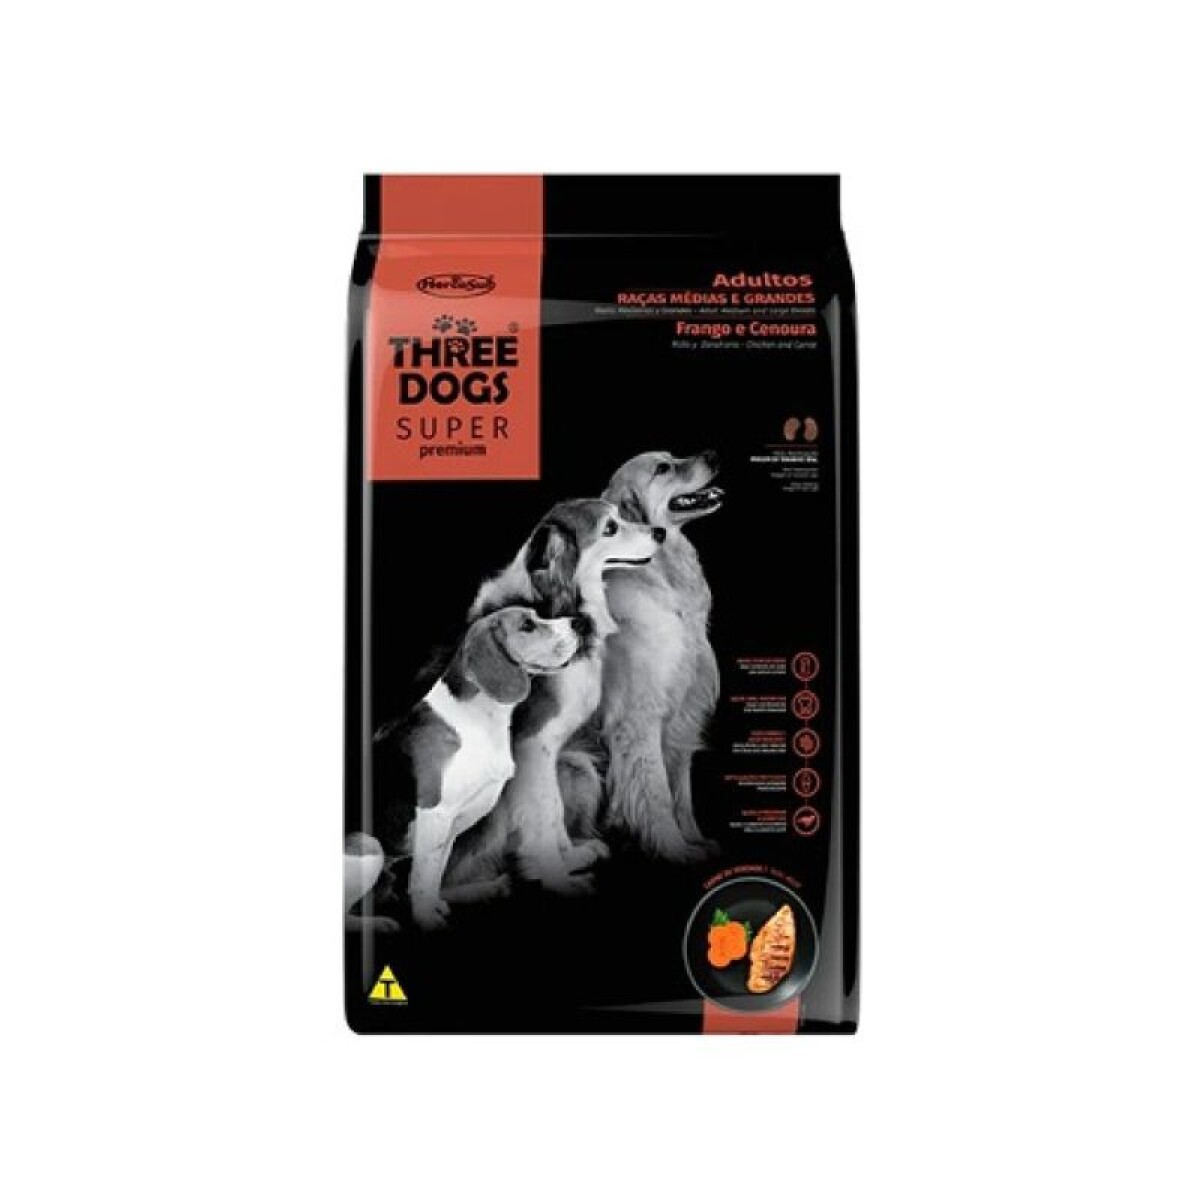 THREE DOGS SUPER PREMIUM ADULTOS MED/GDES 10KG - Three Dogs Super Premium Adultos Med/gdes 10kg 